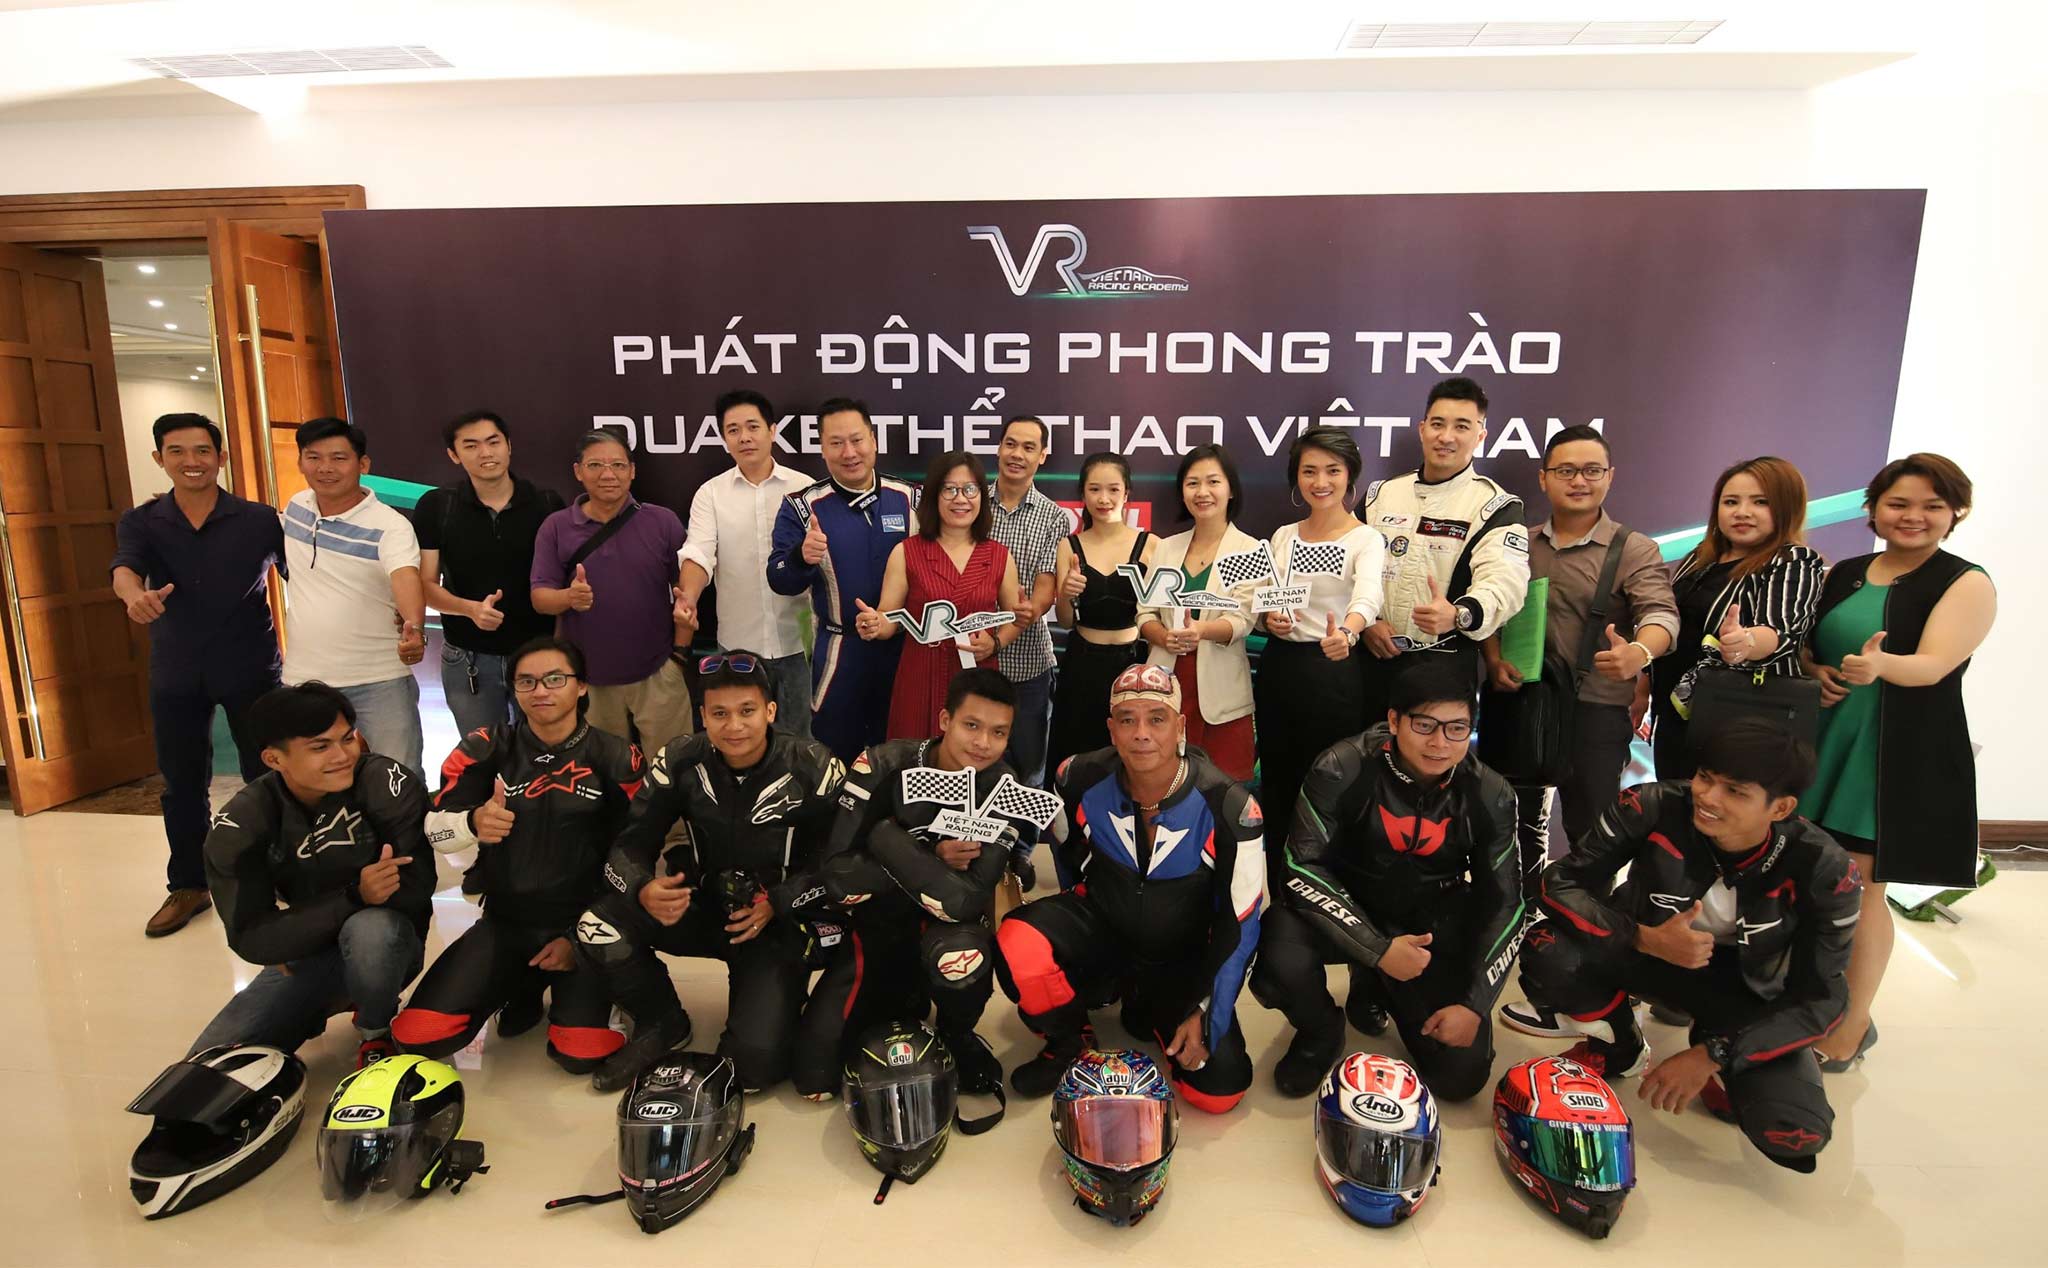 Việt Nam Racing Academy phát động phong trào đua xe chuyên nghiệp trong nước